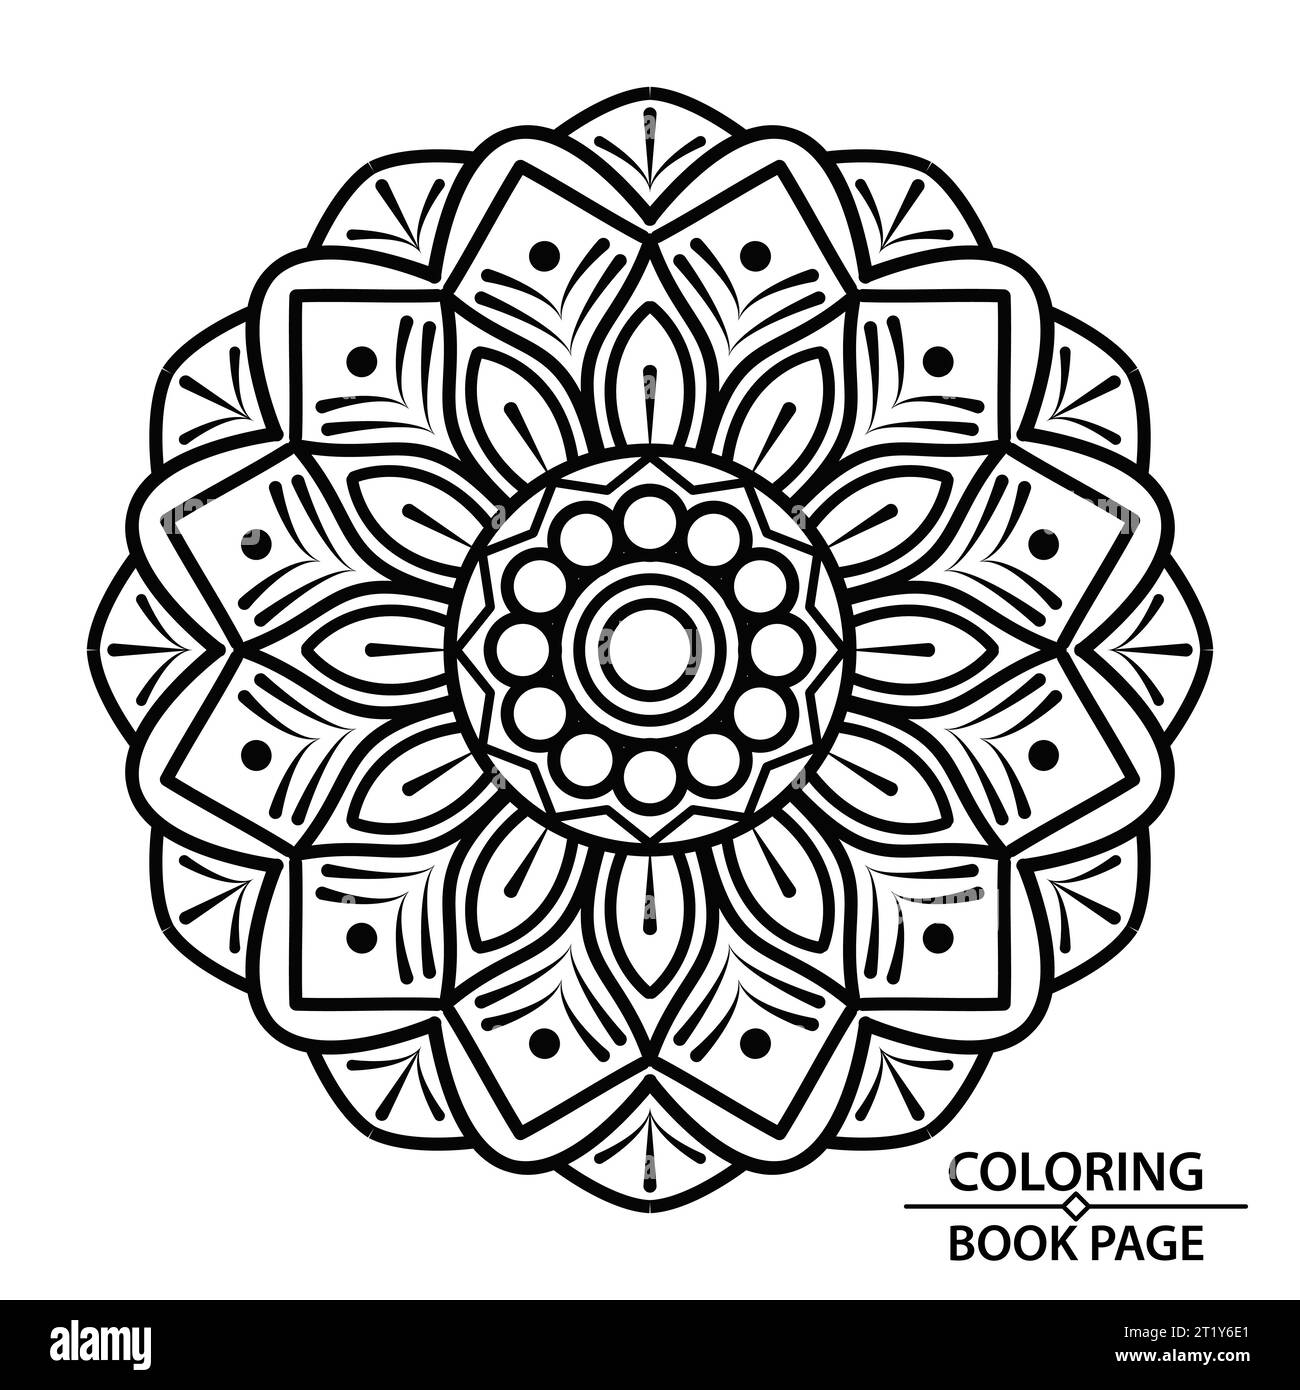 Mandala mindfulness per la creazione di pagine di libri a colori. Afferra subito queste semplici pagine da colorare con mandala e goditi alcuni minuti di relax senza interruzioni Illustrazione Vettoriale